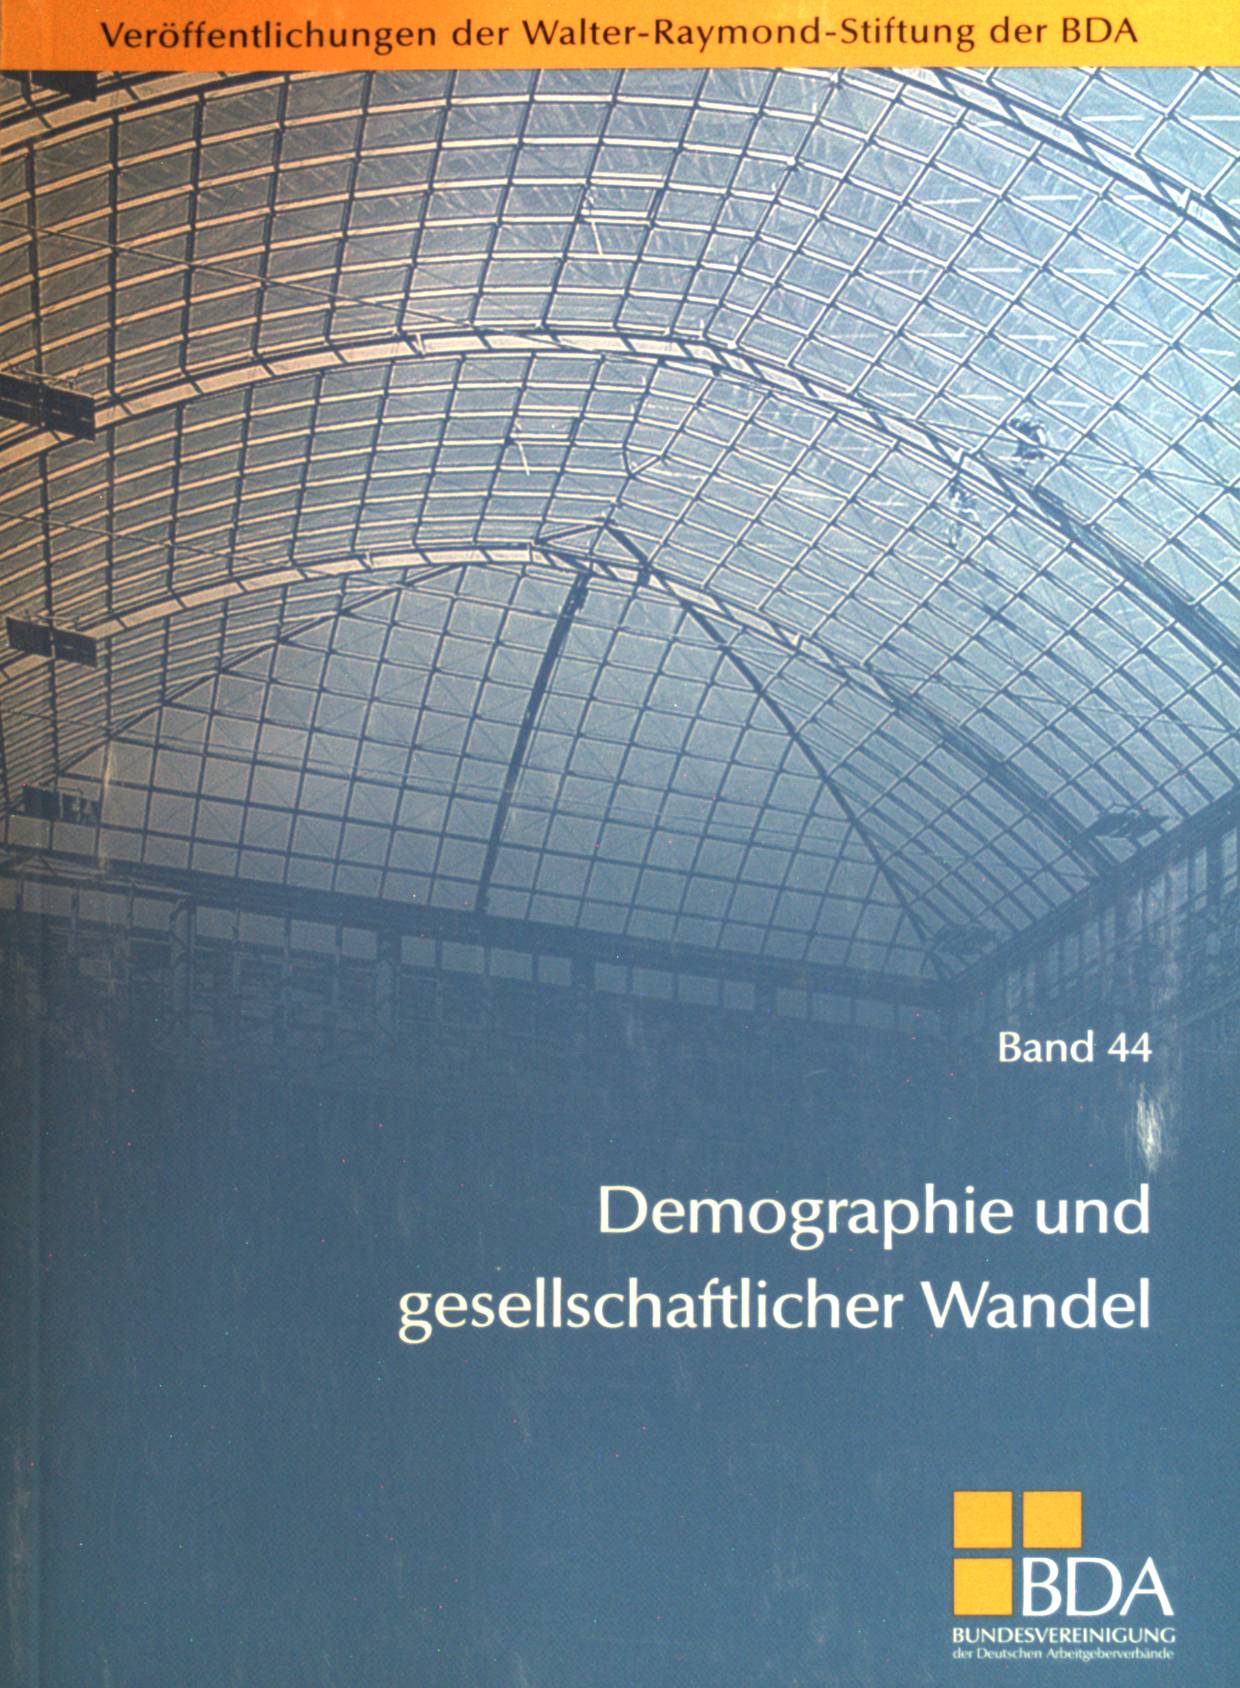 Demographie und gesellschaftlicher Wandel; Band 44. Veröffentlichungen der Walter-Raymond-Stiftung der BDA ; - Bude, Heinz (Mitwirkender)